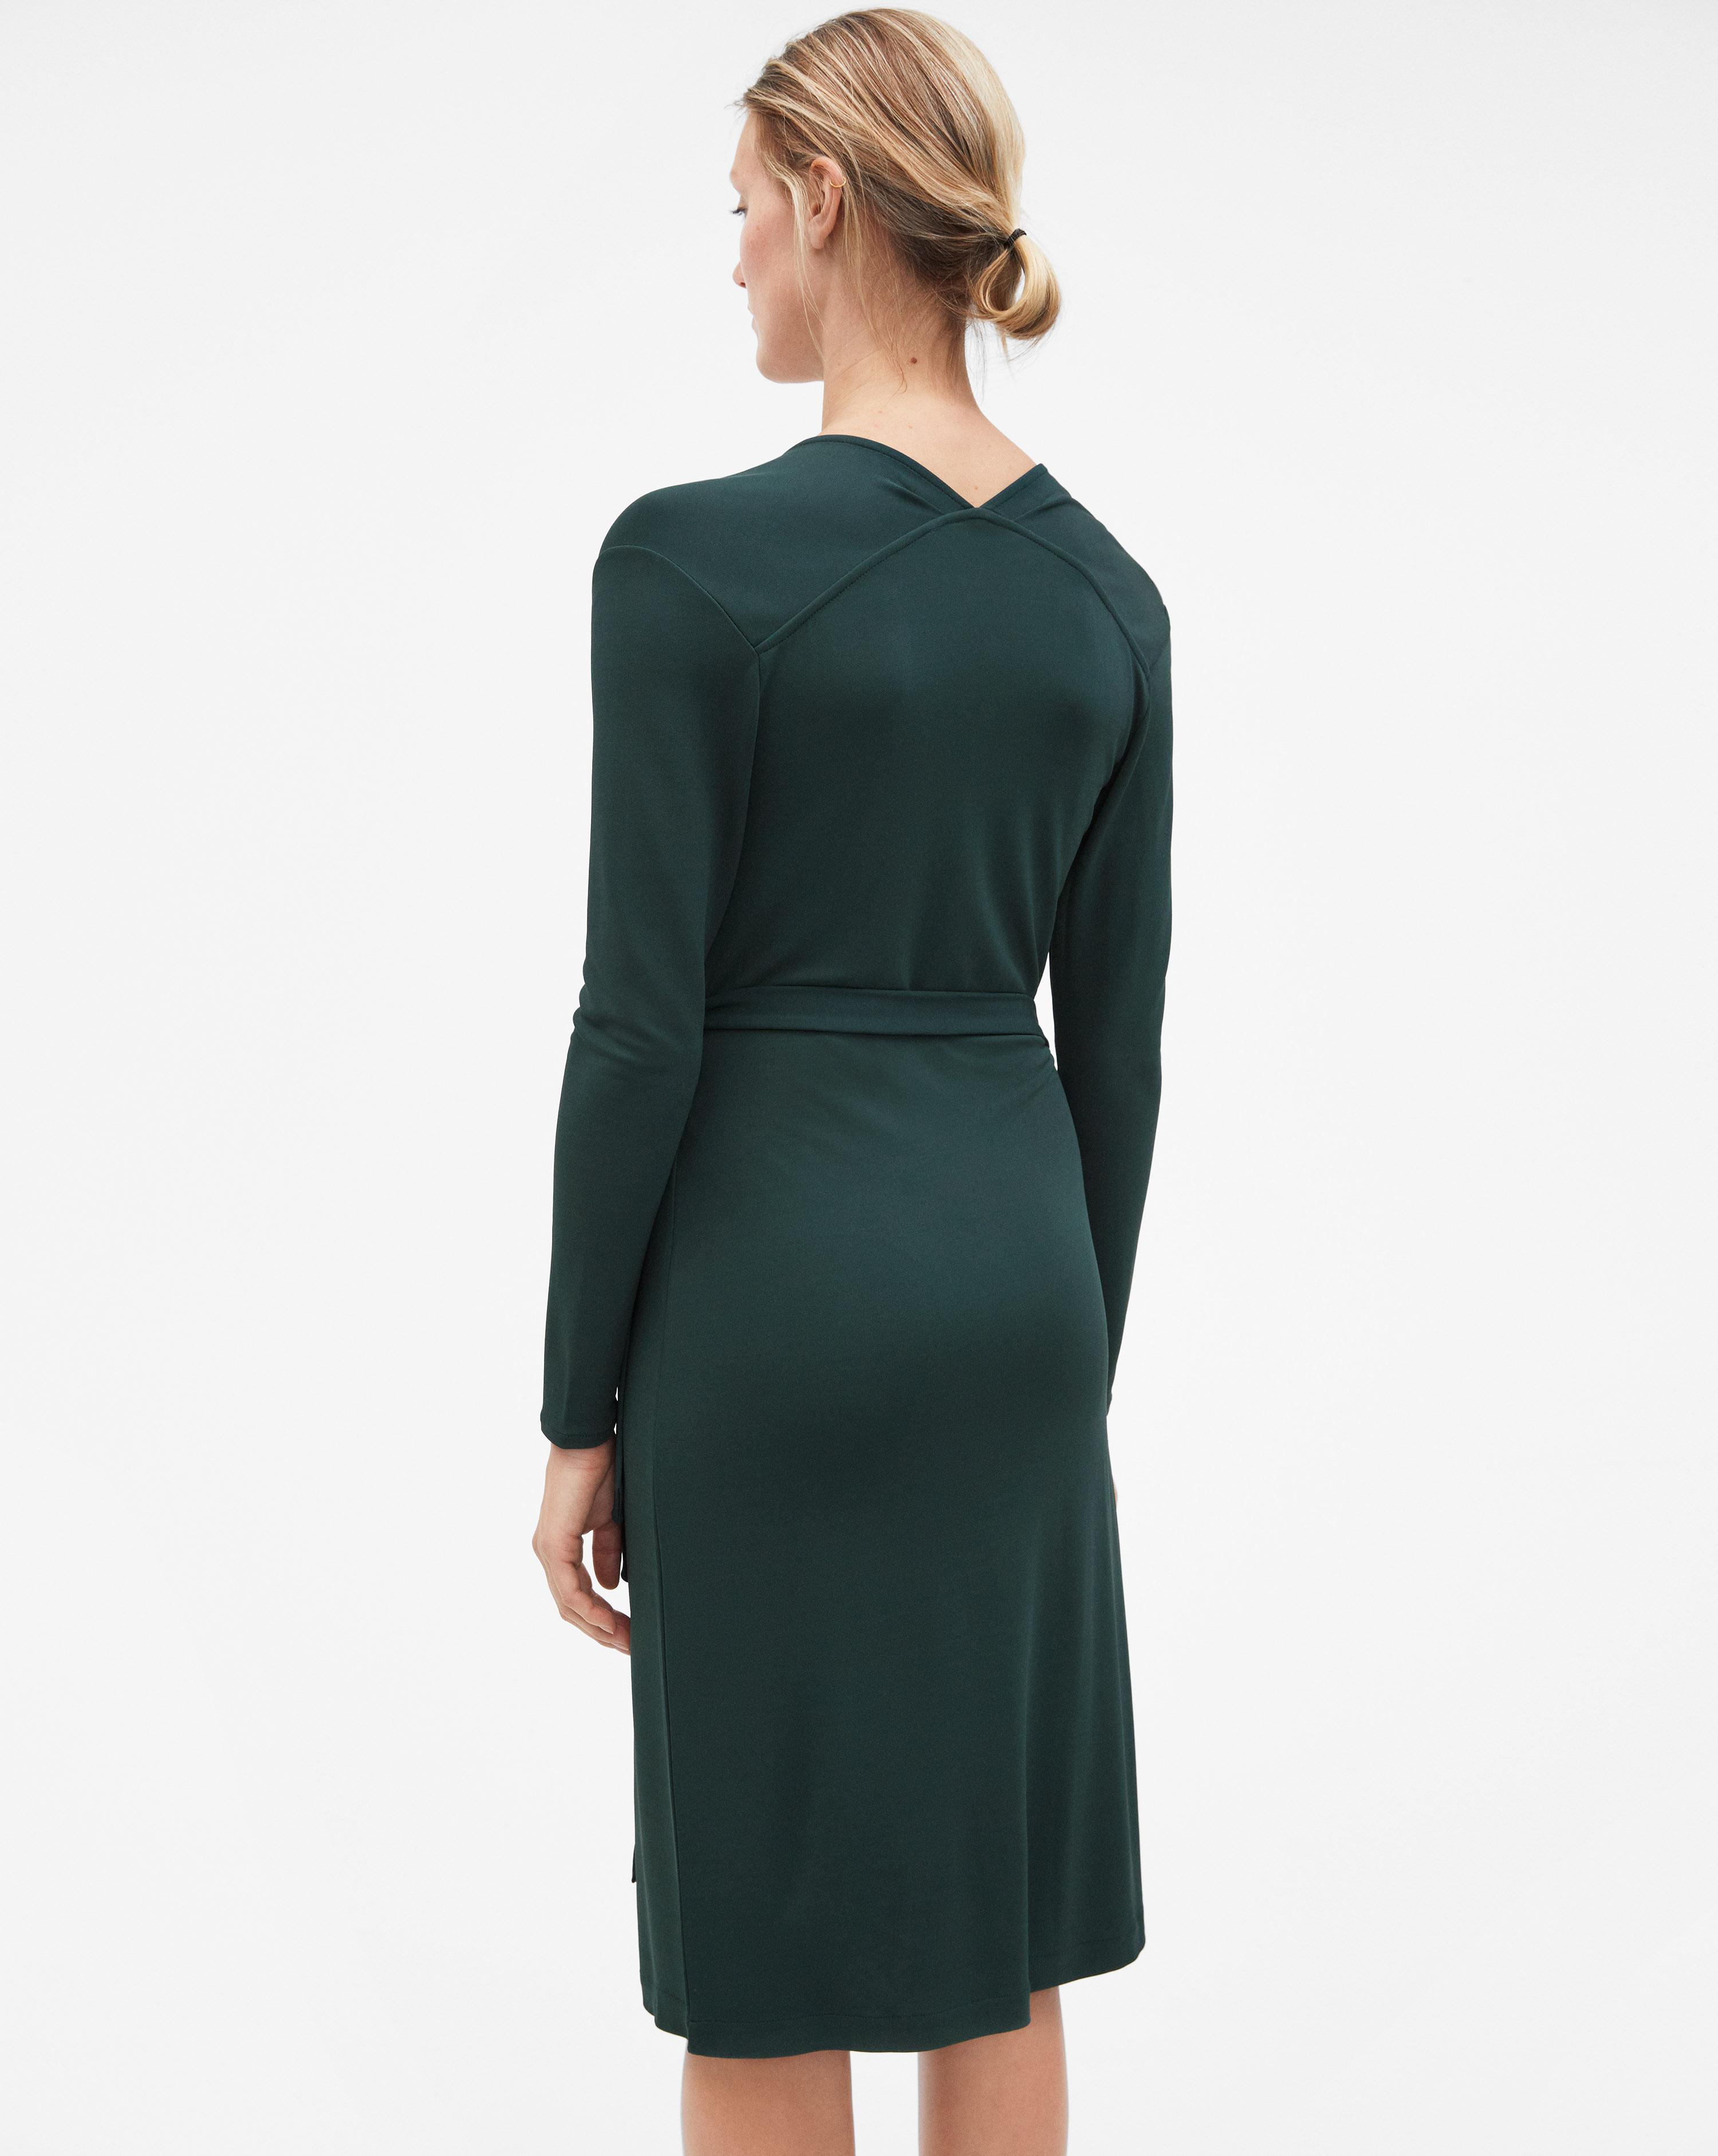 Filippa K Synthetic Drapey Crepe Wrap Dress Spruce in Green - Lyst